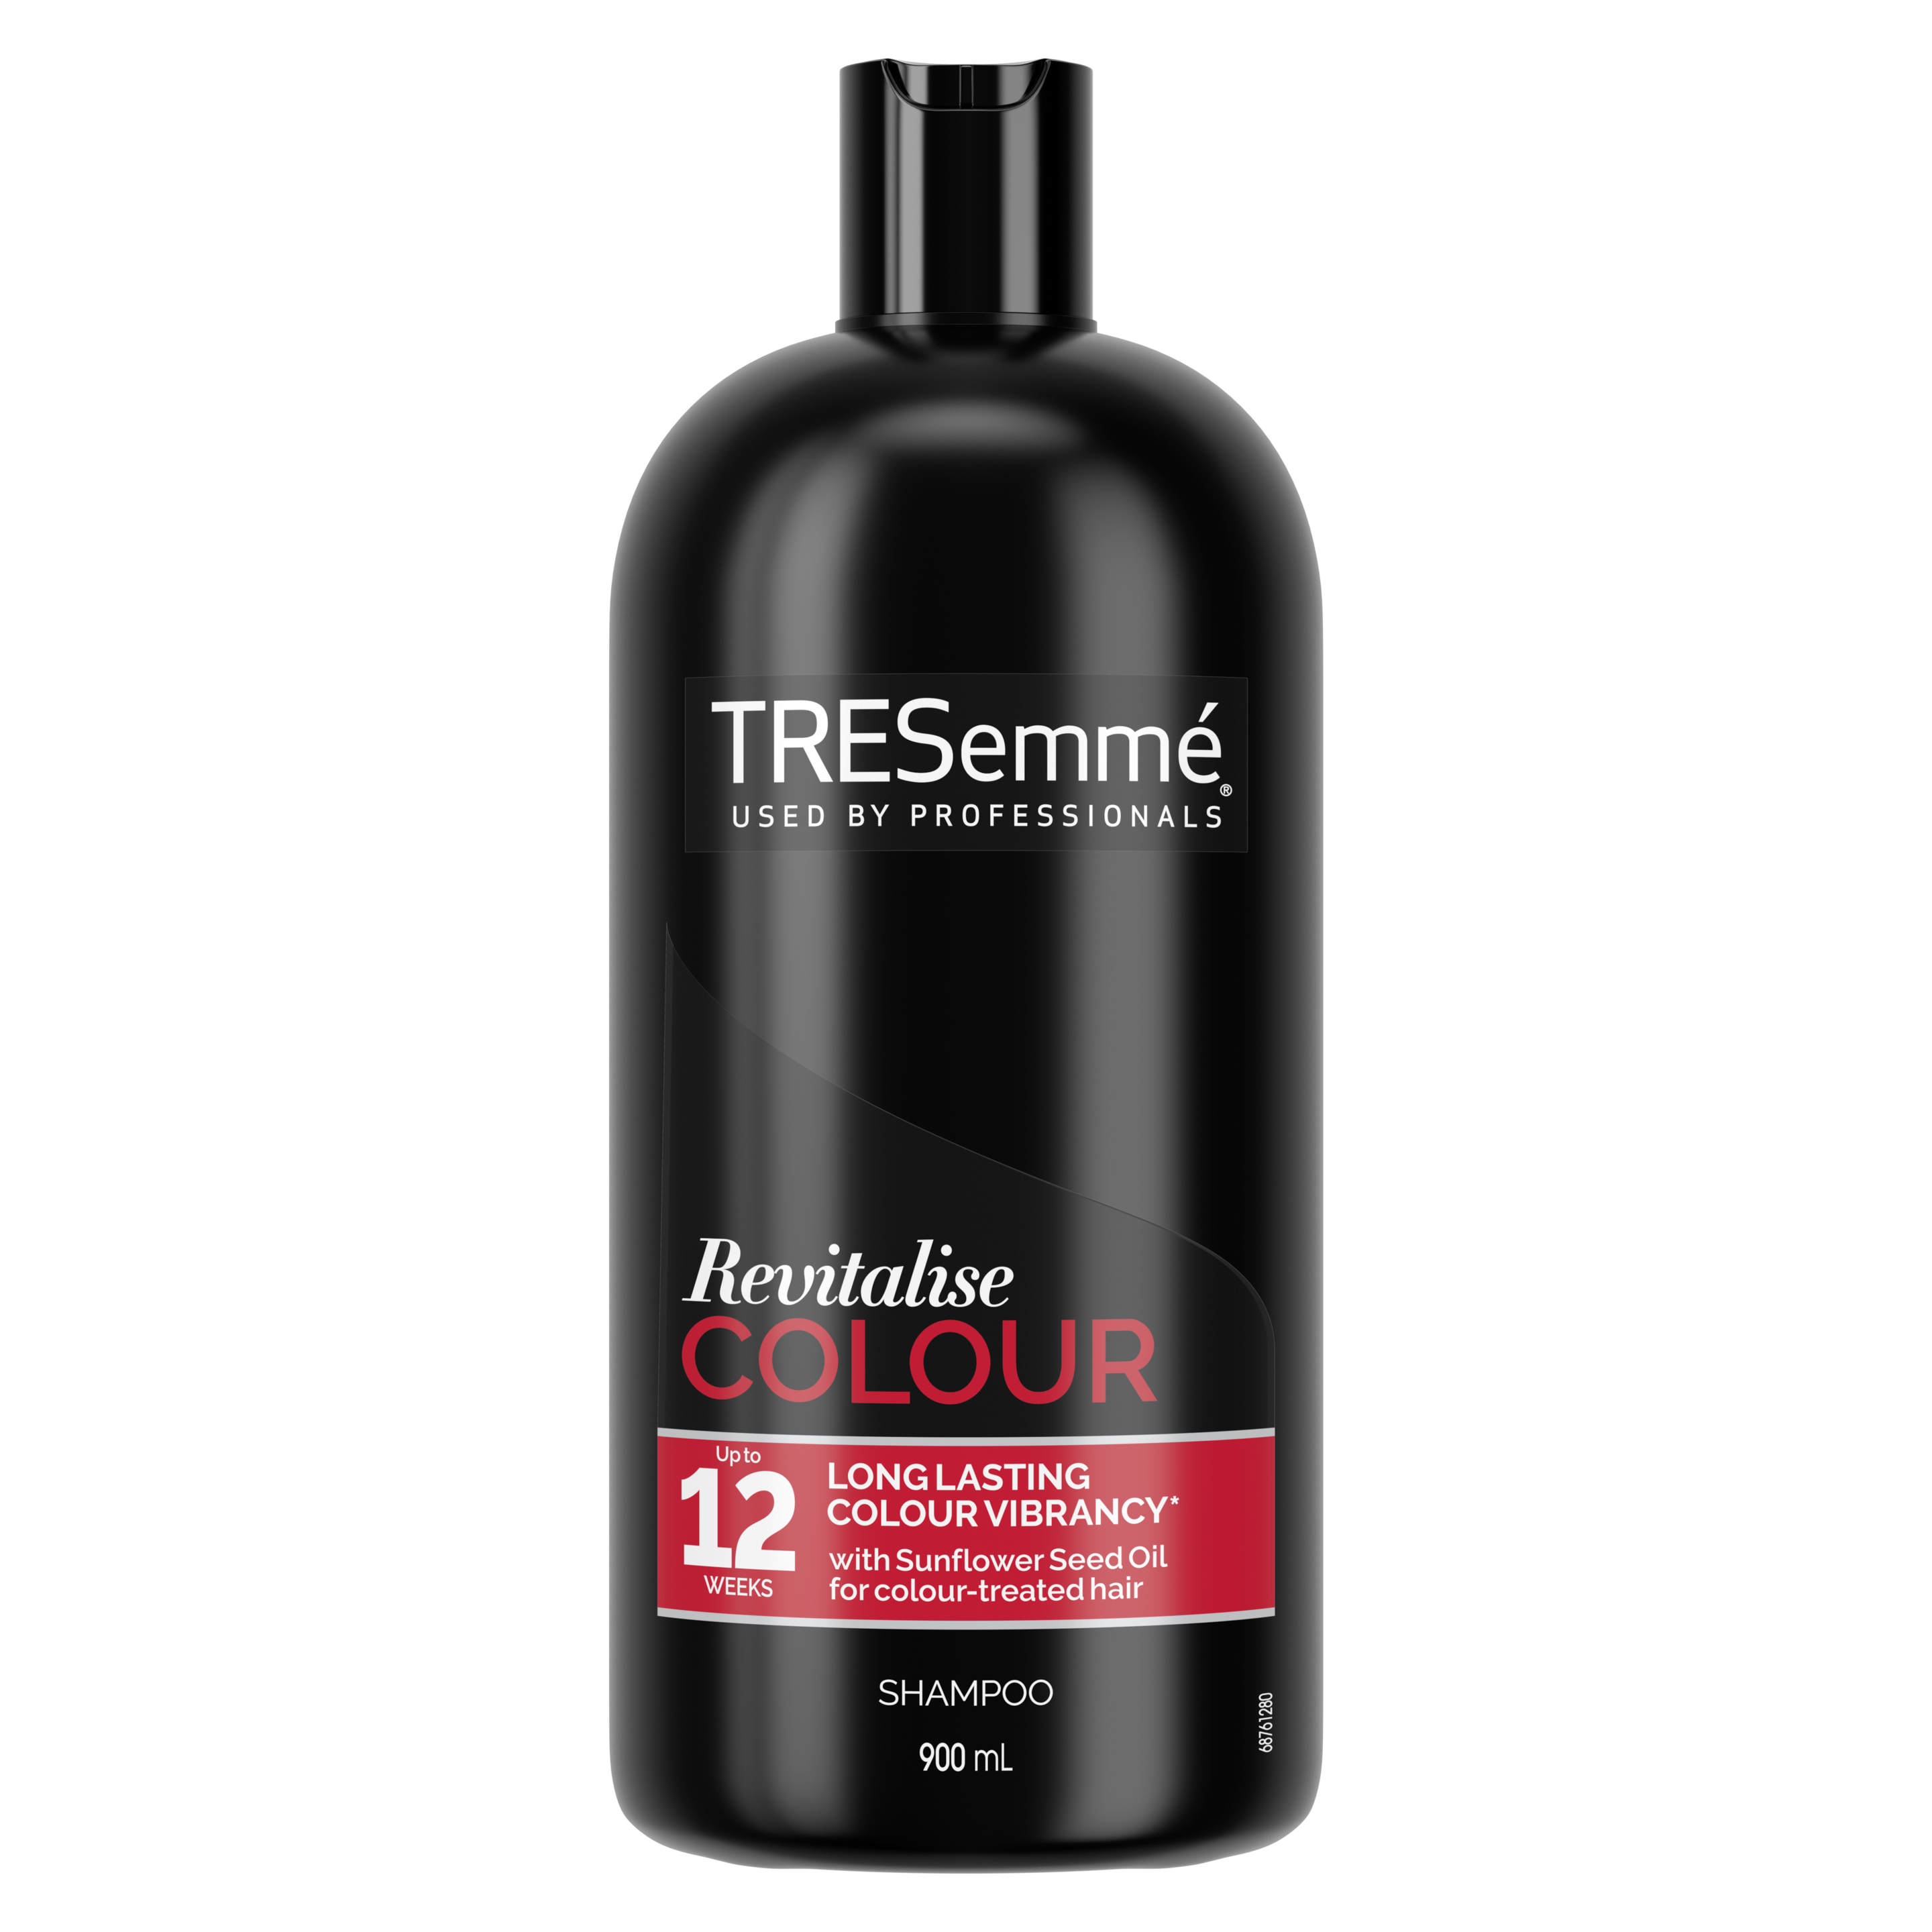 Billede på forsiden af pakken af en flaske med TRESemmé Revitalise Colour Shampoo 900 ml